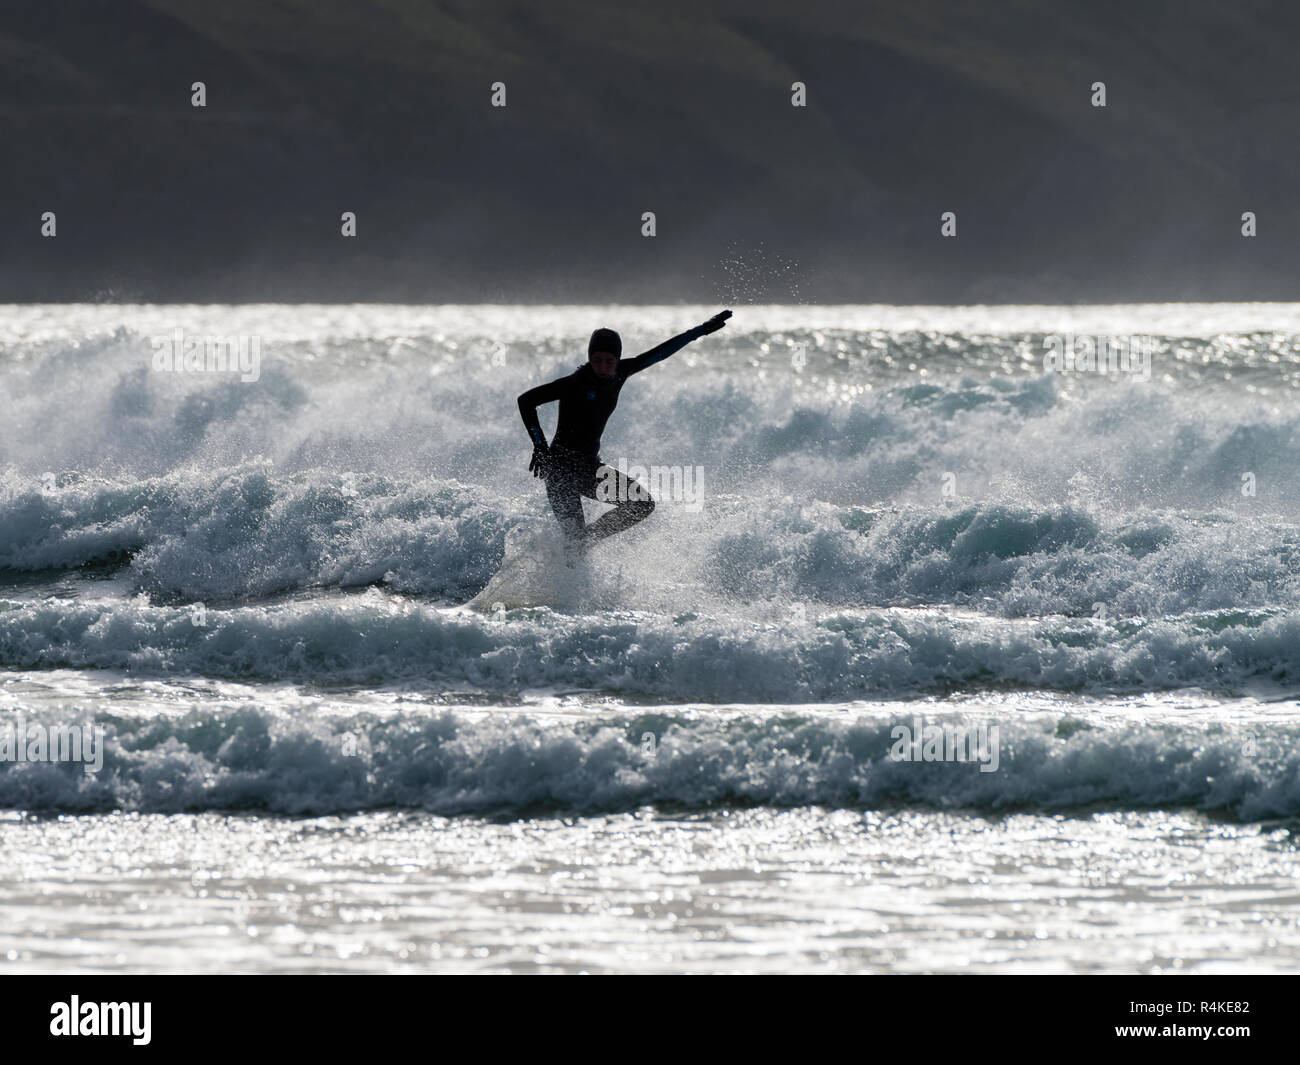 Chica surfista en neopreno golpea una pose manteniendo el equilibrio en las olas contra un telón de fondo dramáticamente iluminado. Foto de stock